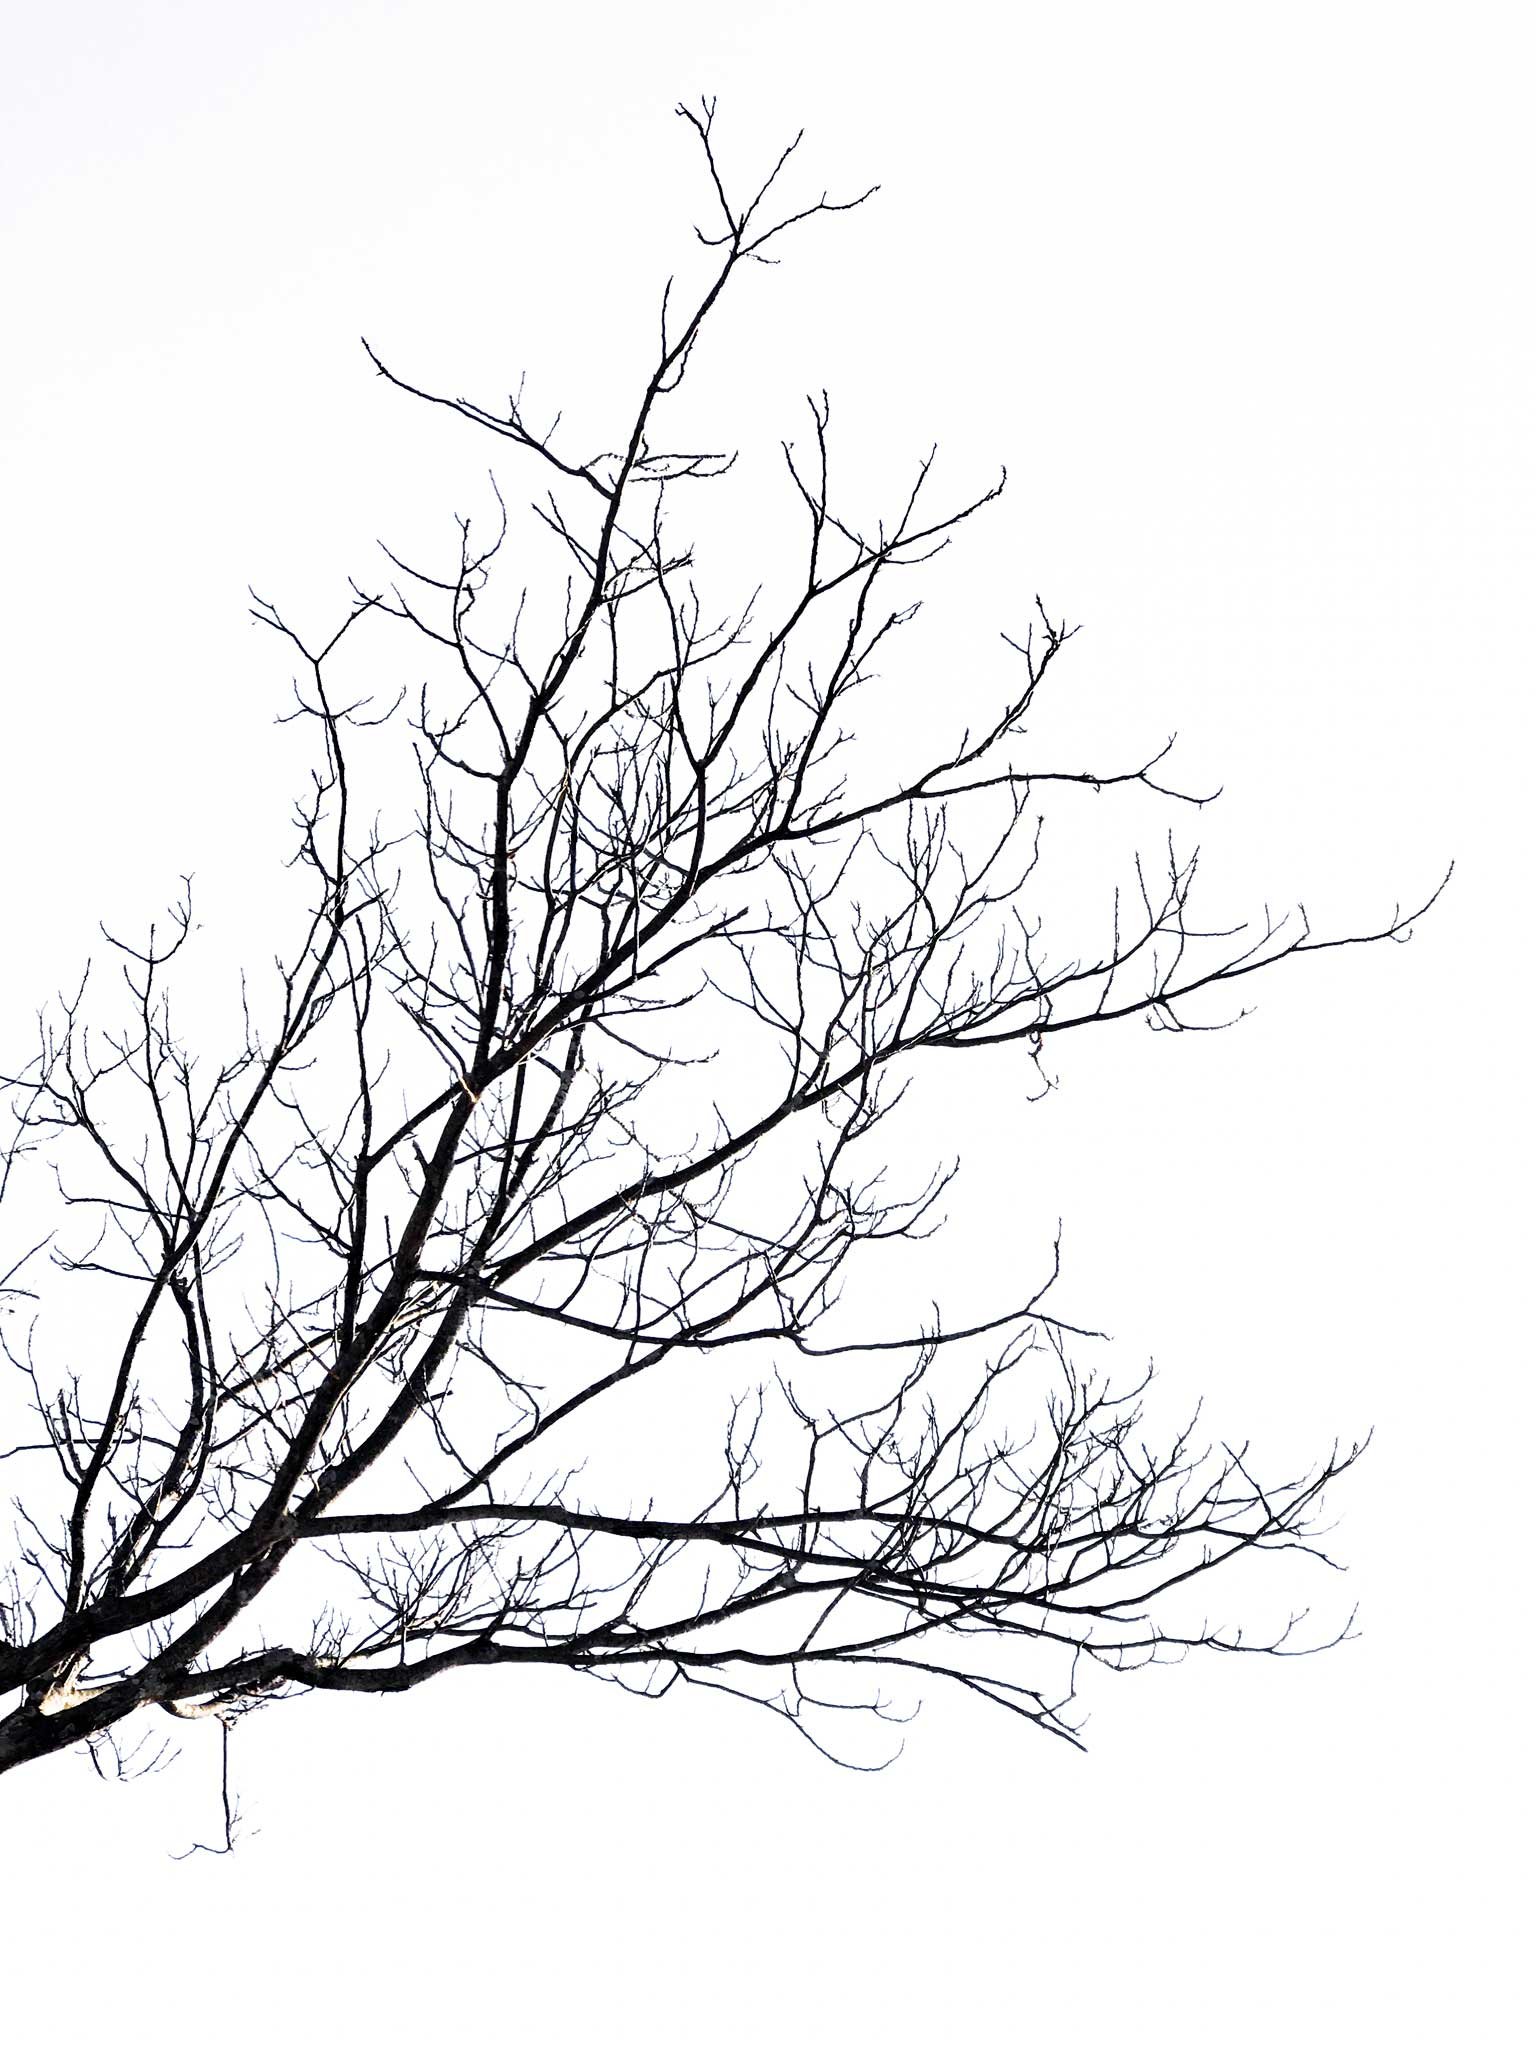 Tree-in-Winter.2_17X22_8477.jpg